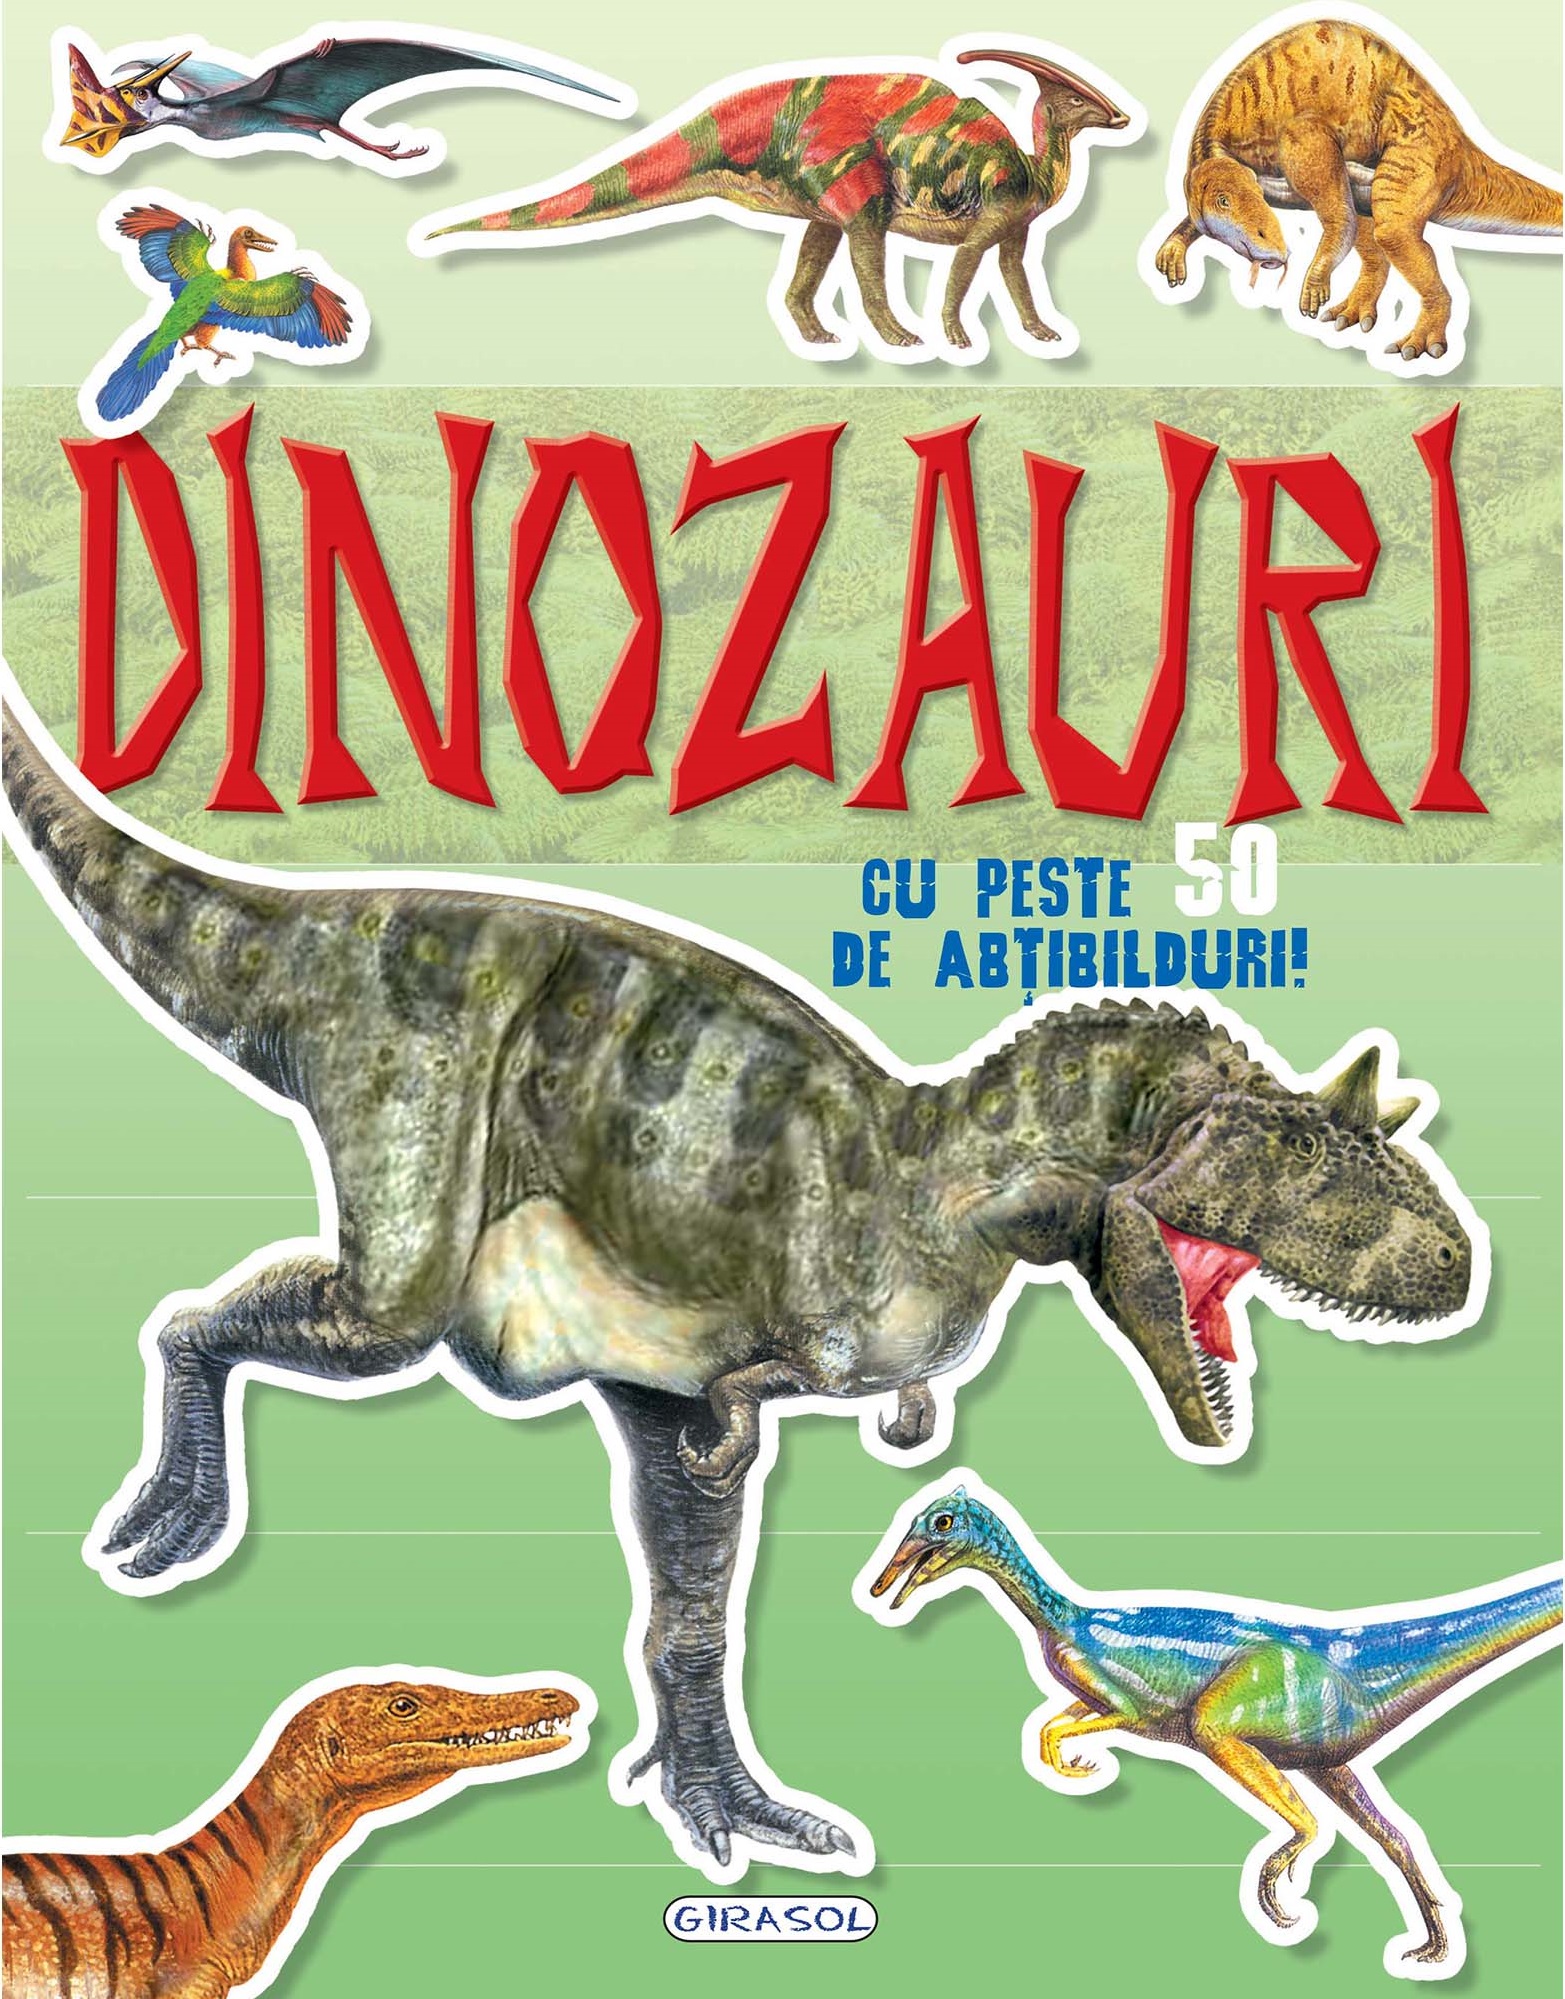 Mai cauta si lipeste-Dinozauri cu peste 50 de abt.